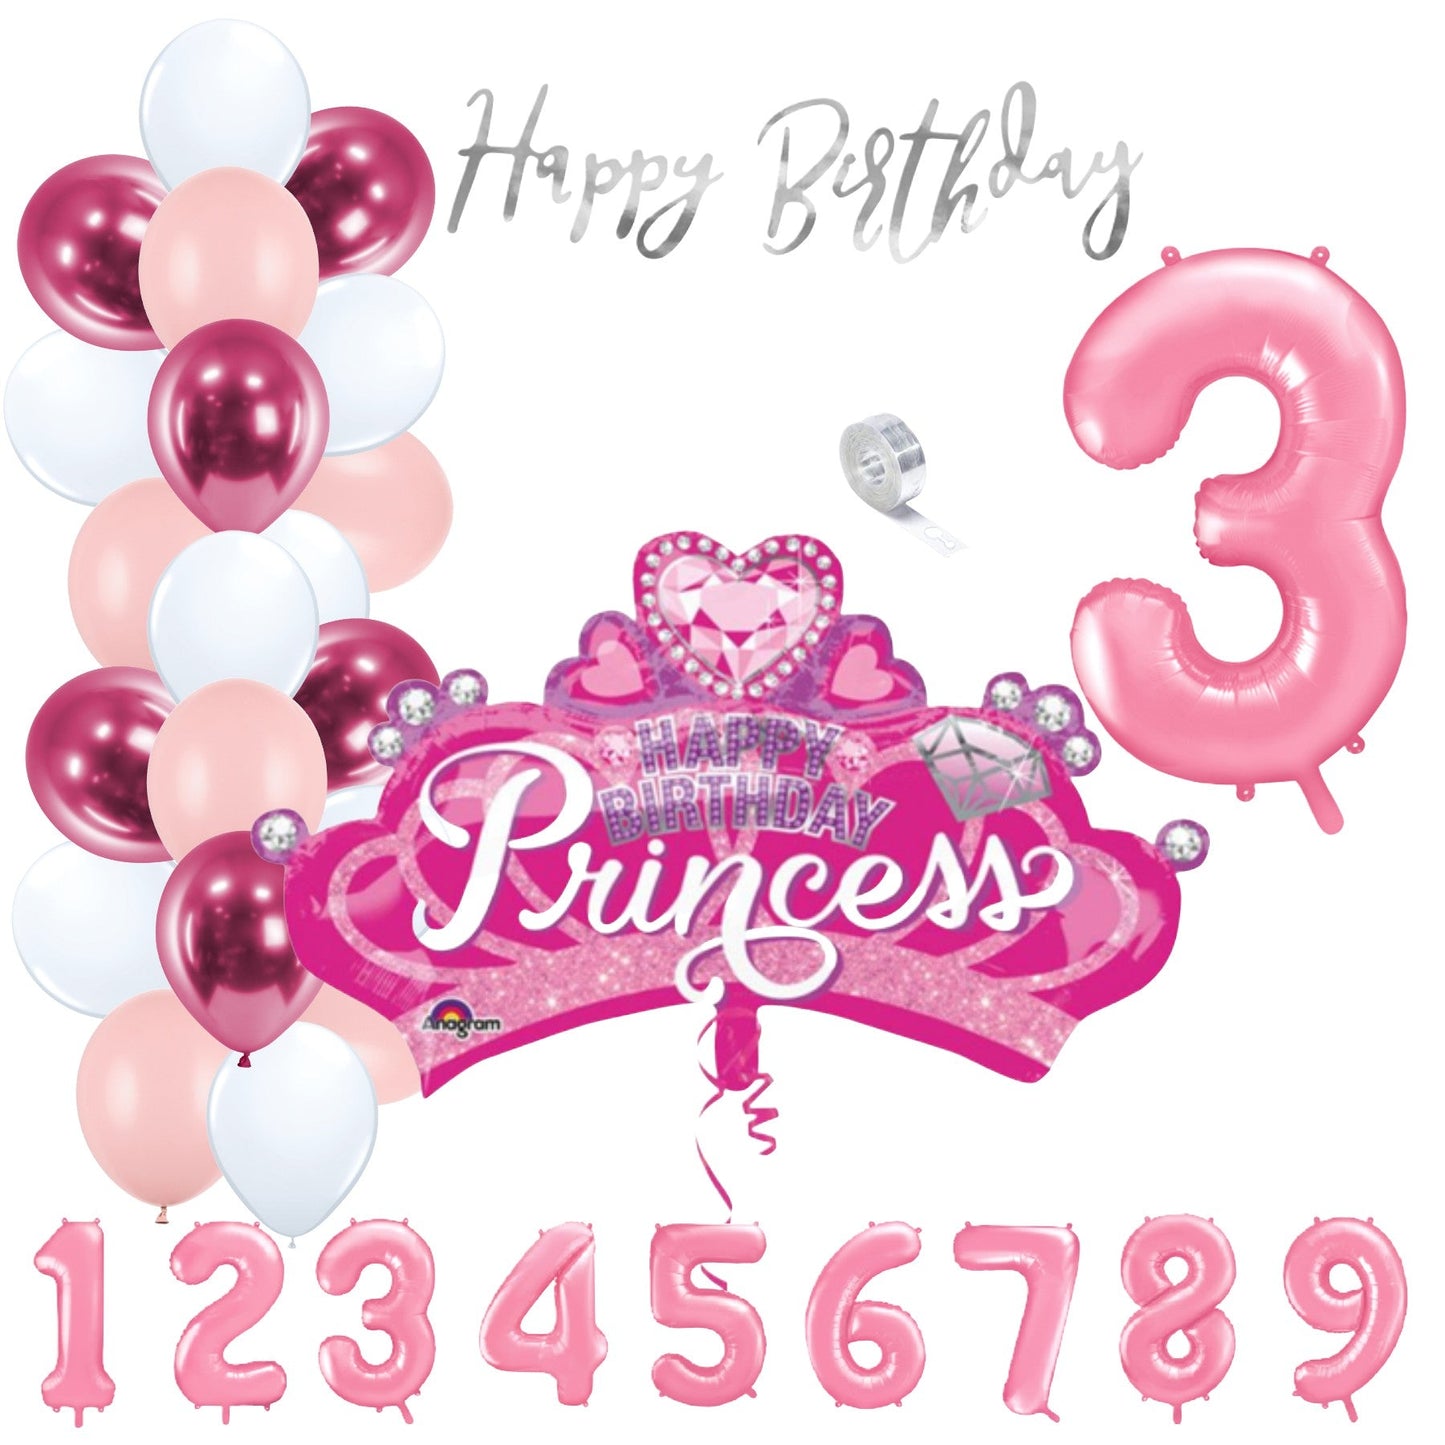 Partykarton "Prinzessin Rosa" 29 Teile - Party im Karton